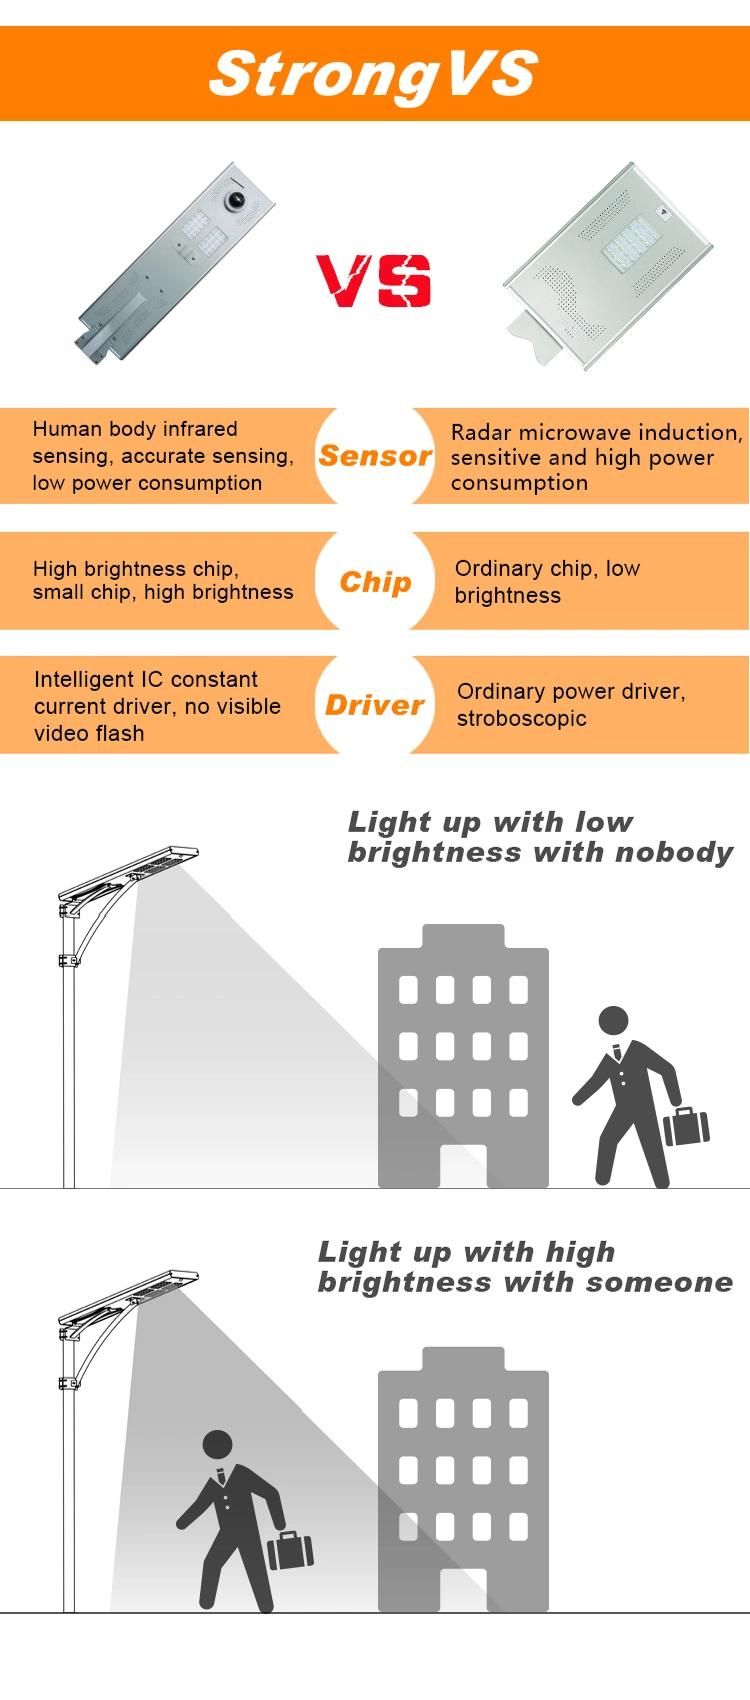 LED Lighting CCTV Monitoring Camera Integrated 30W Solar Street Light